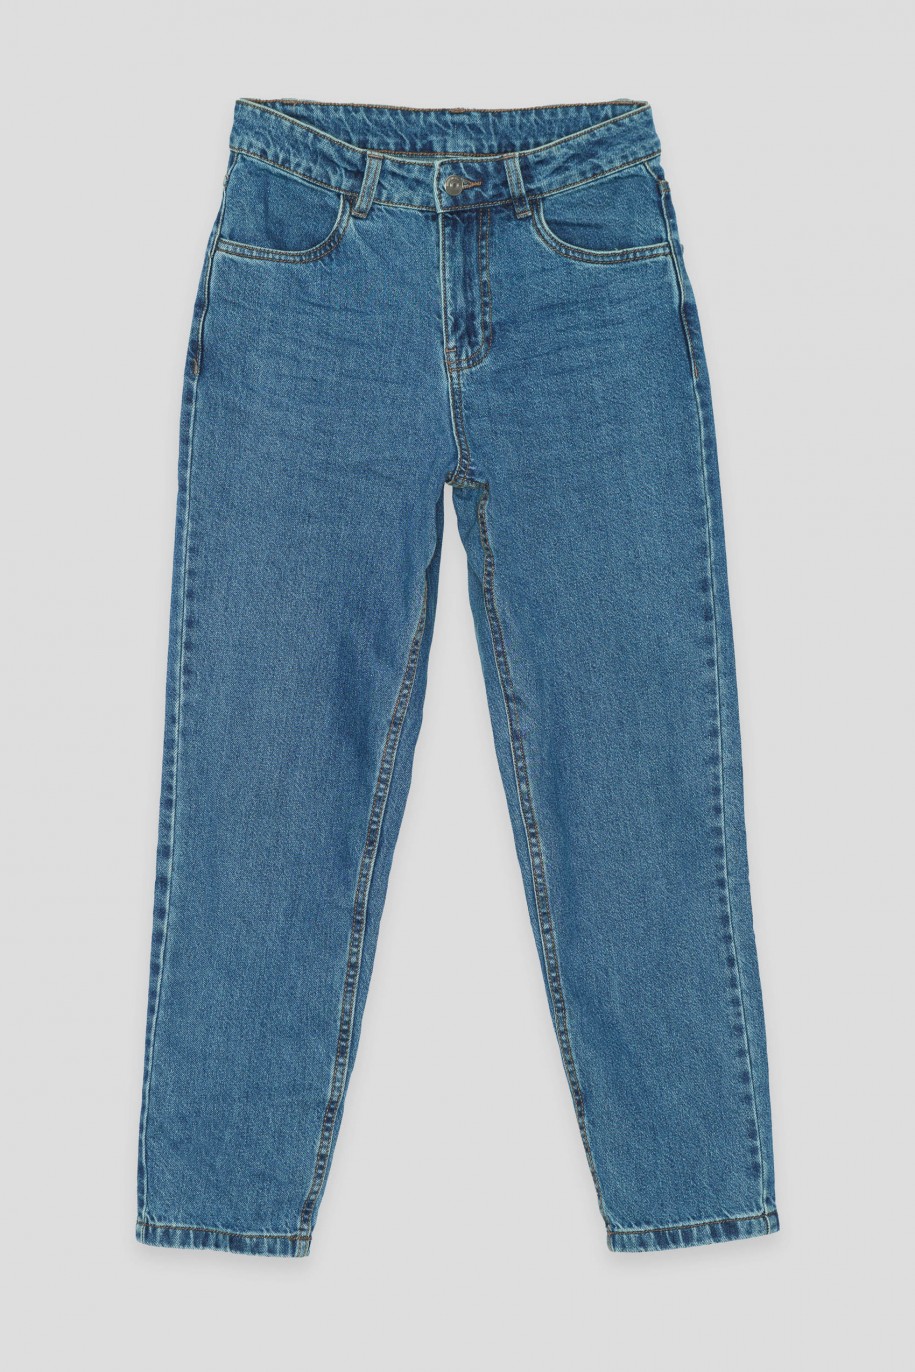 Niebieskie jeansy typu MOM FIT - 45363